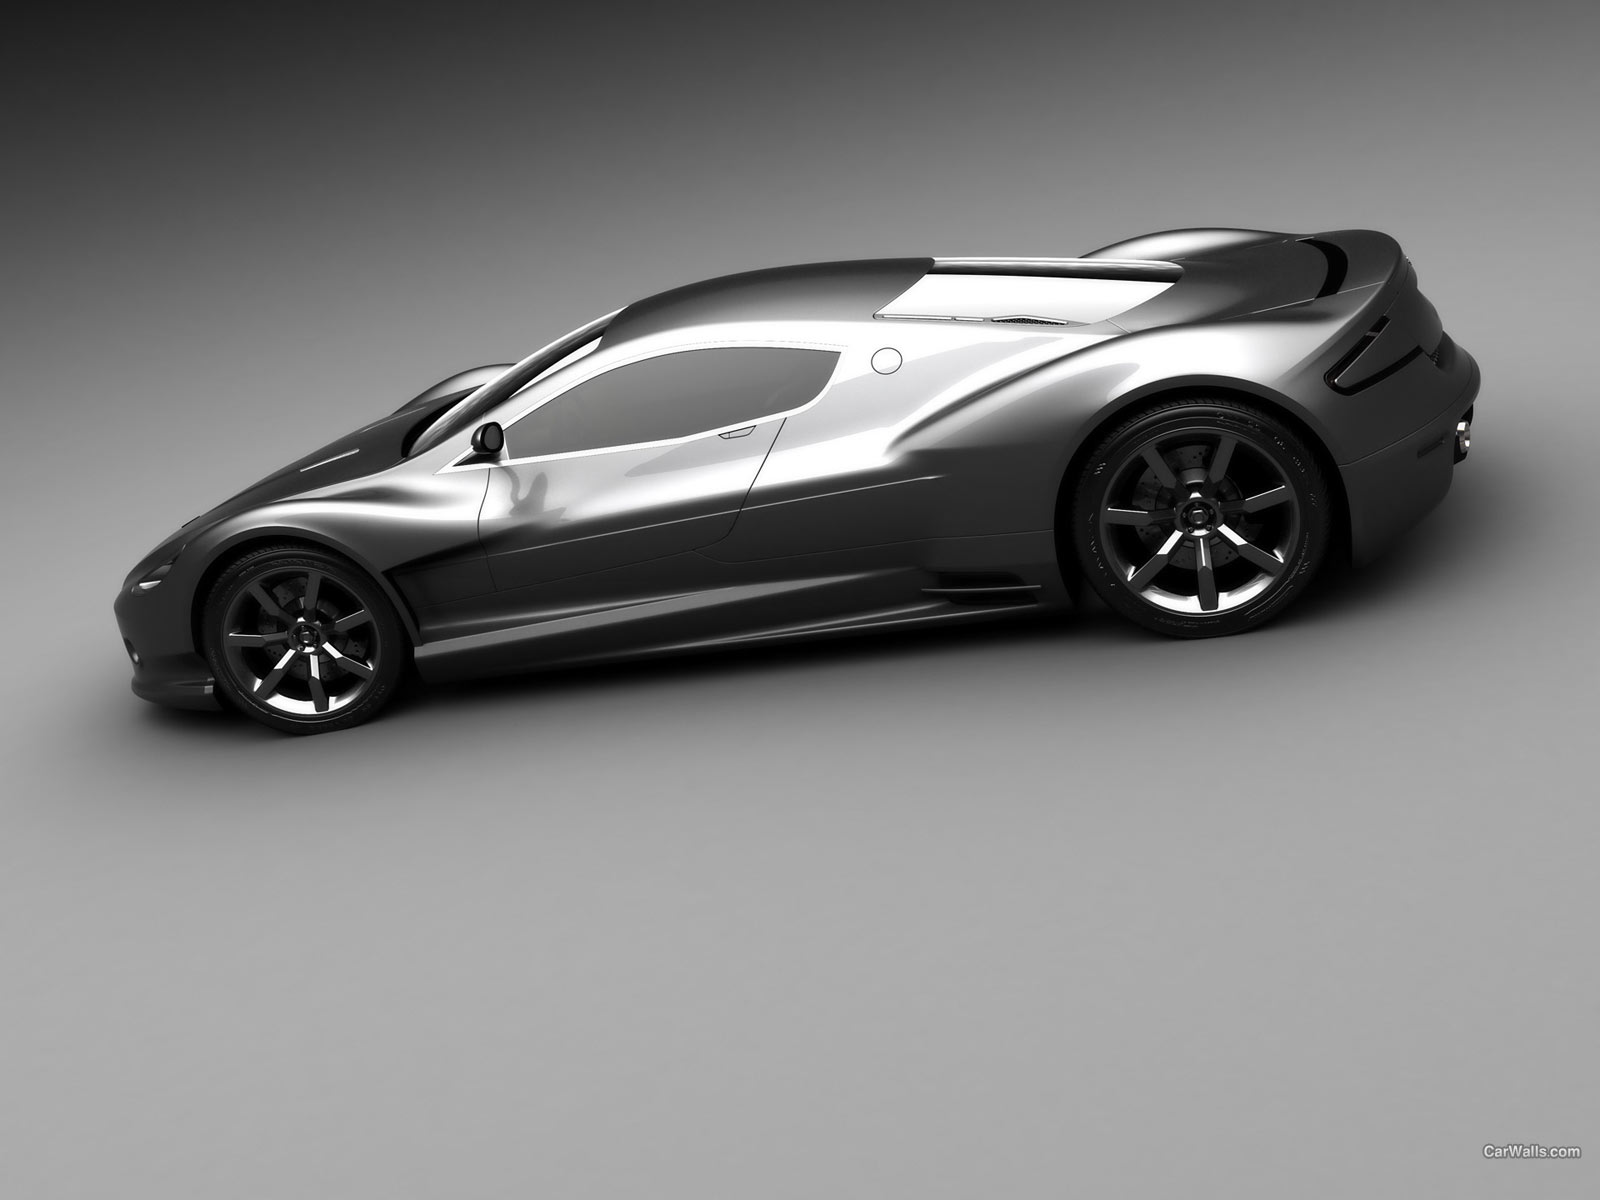 Meilleurs fonds d'écran Aston Martin Amv10 pour l'écran du téléphone